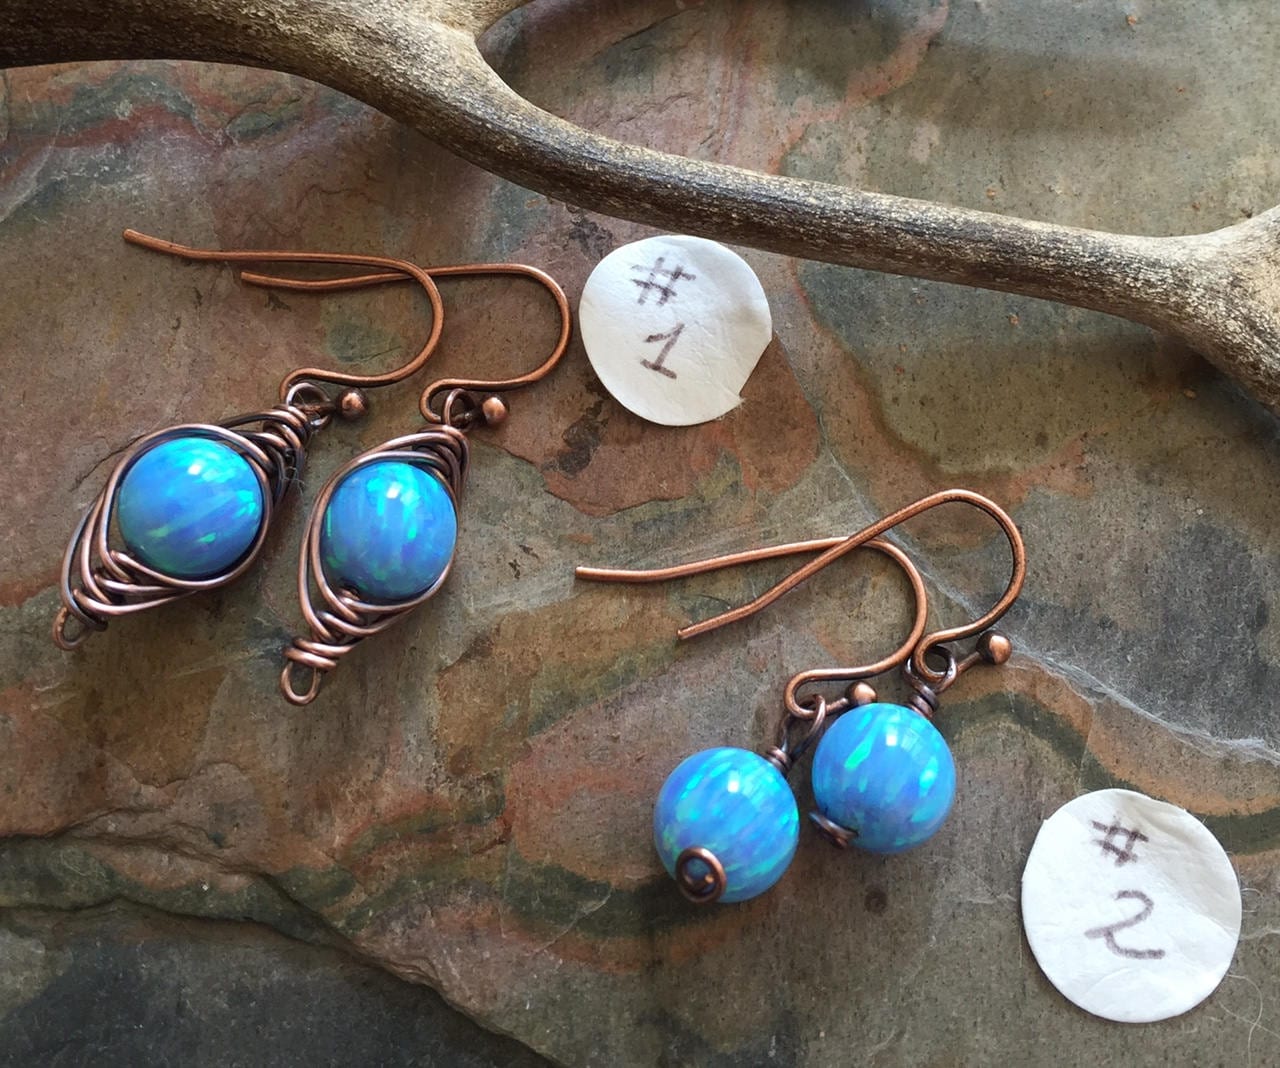 Blue Opal earrings in Antiqued Copper ,Simulated Opal dangling earrings in Copper wire,Synthetic Blue Opal earrings,Mothers Day Gift